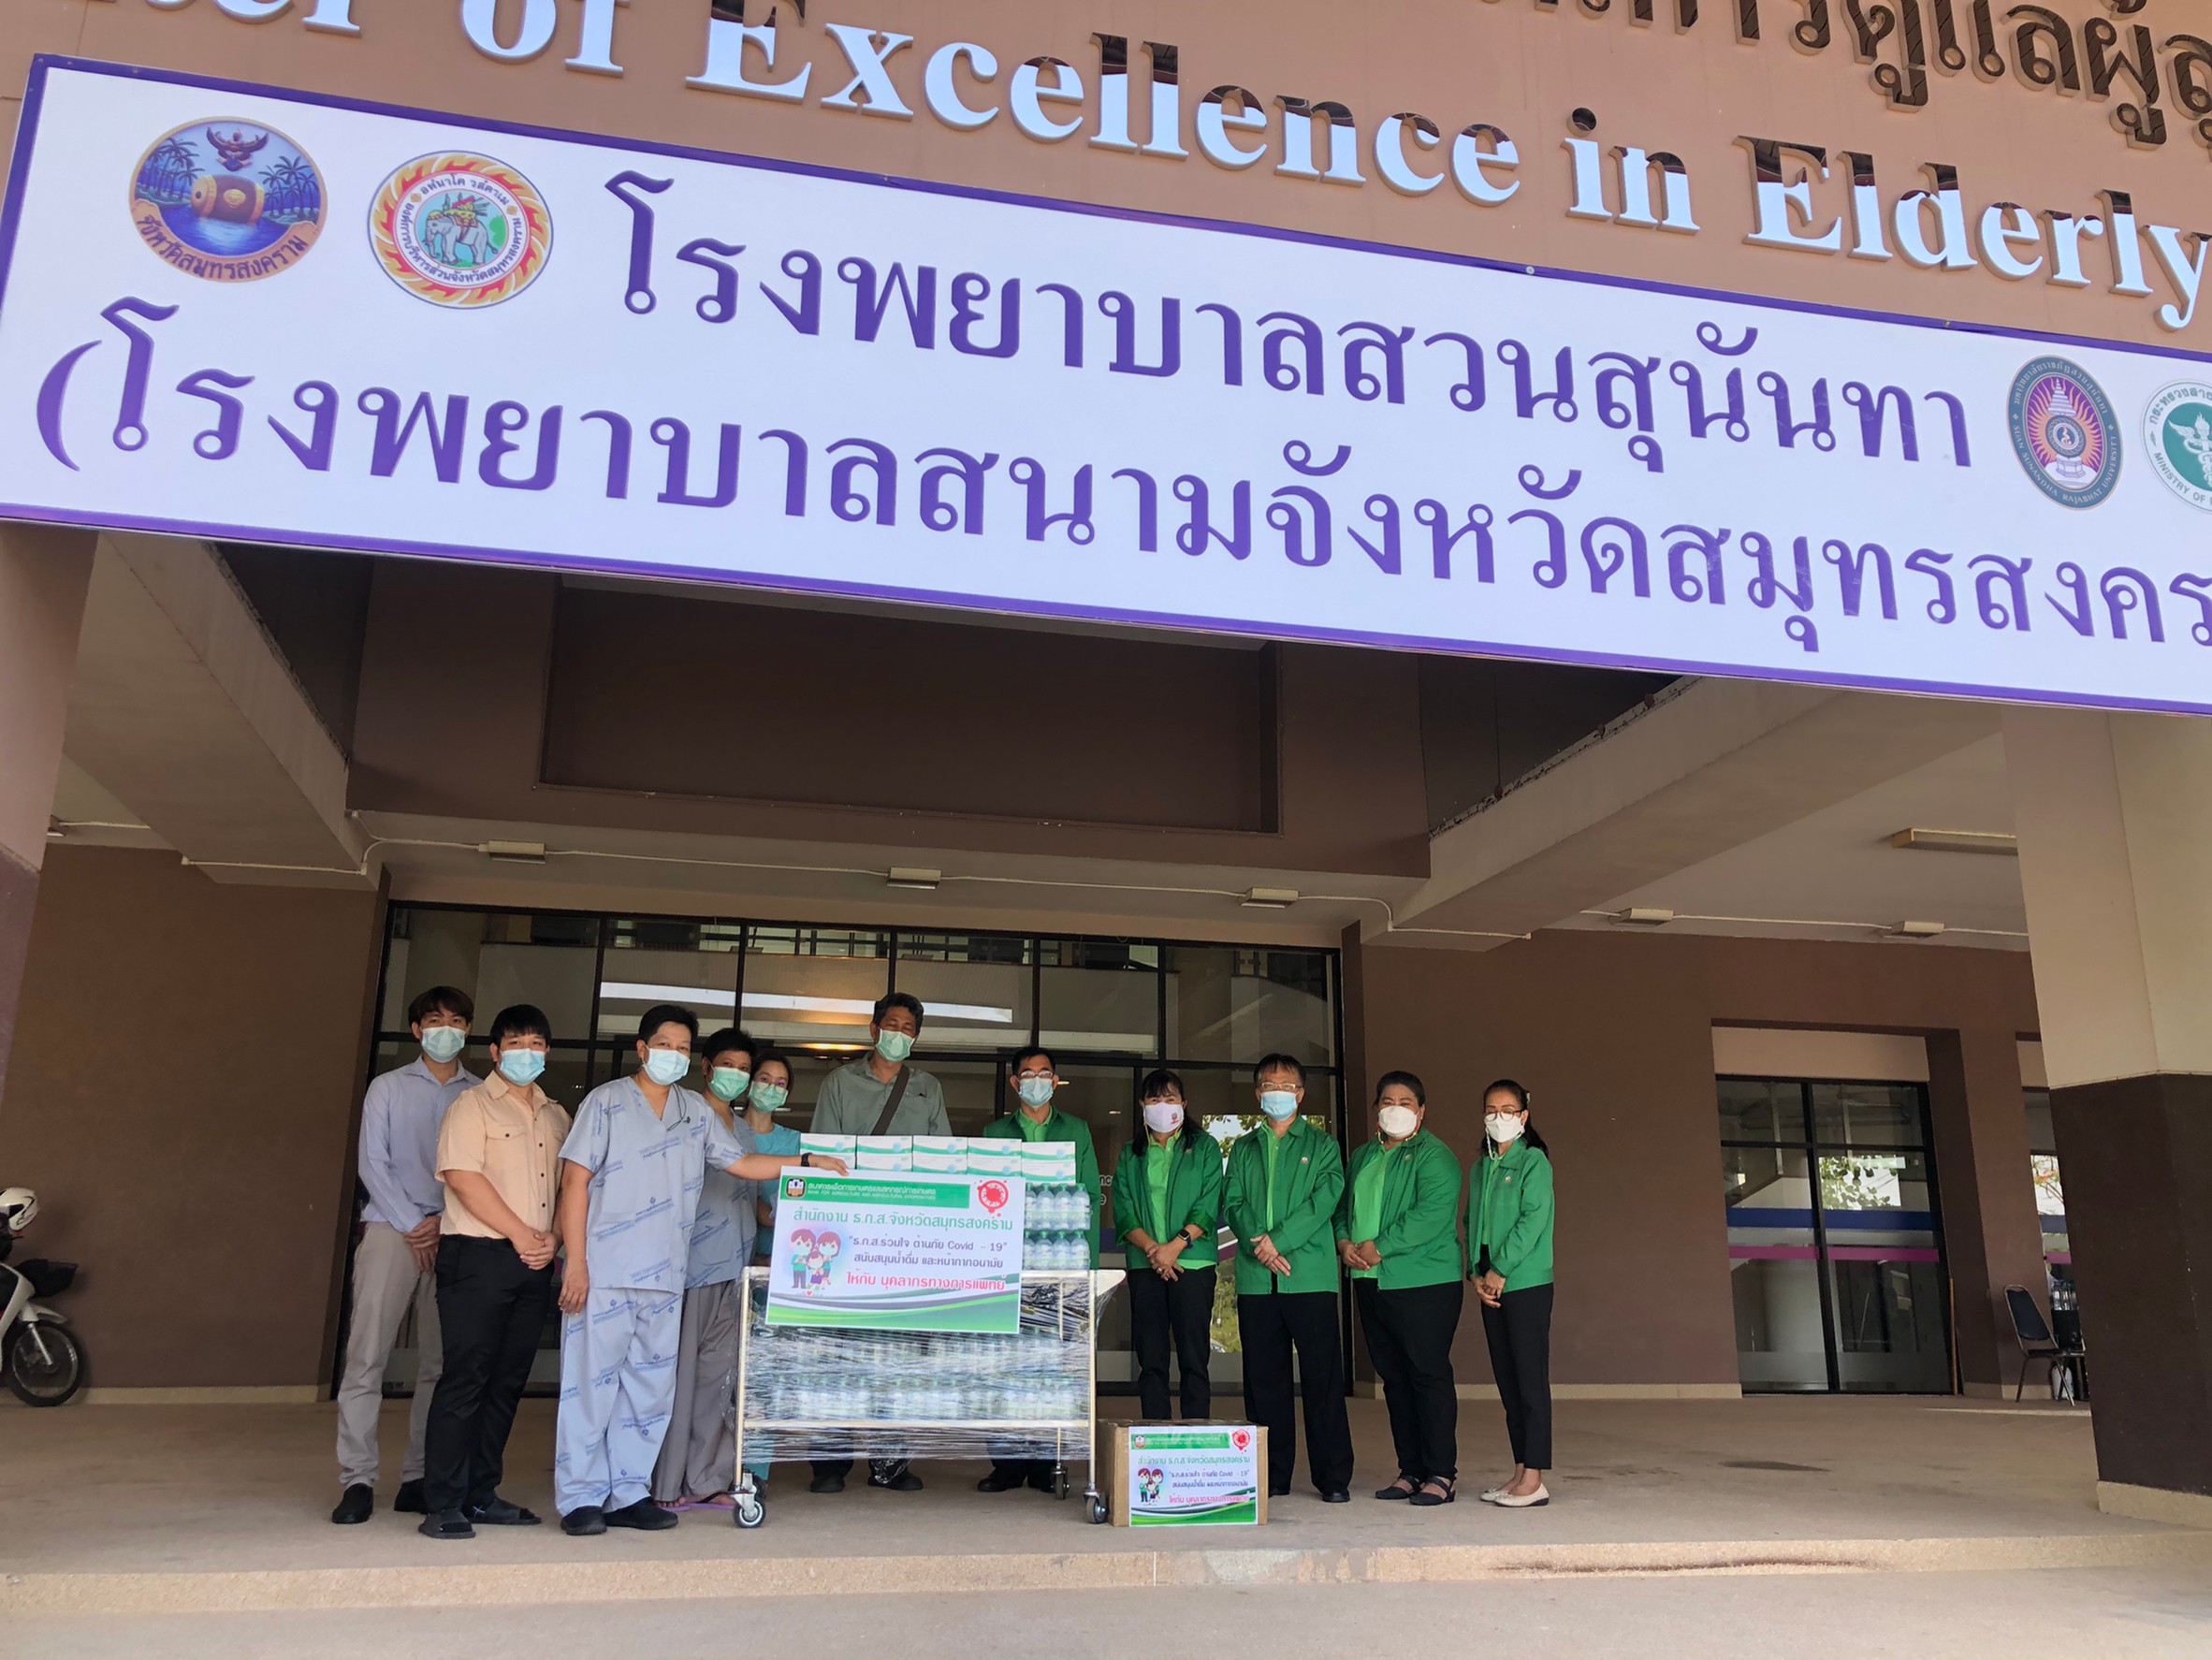 ธ.ก.ส. ทั่วไทย ร่วมใจมอบน้ำดื่มและเครื่องอุปโภคบริโภค เพื่อสาธารณประโยชน์ สู้ภัยโควิด-19